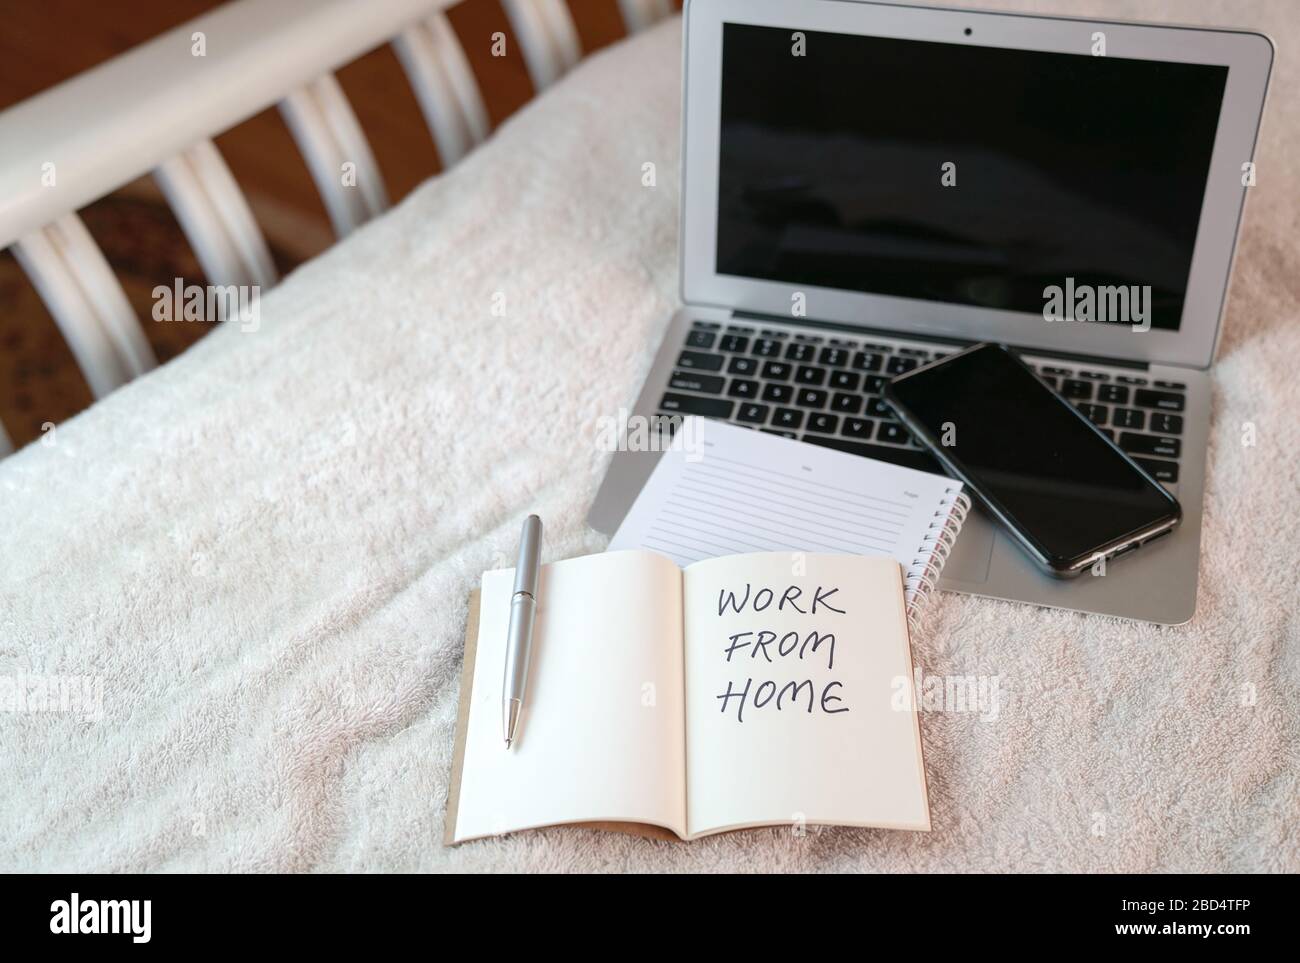 Espacio de trabajo en casa con ordenador portátil y bloc de notas en la parte superior de la cama. Texto, trabajo desde casa escrito en el bloc de notas. Foto de stock